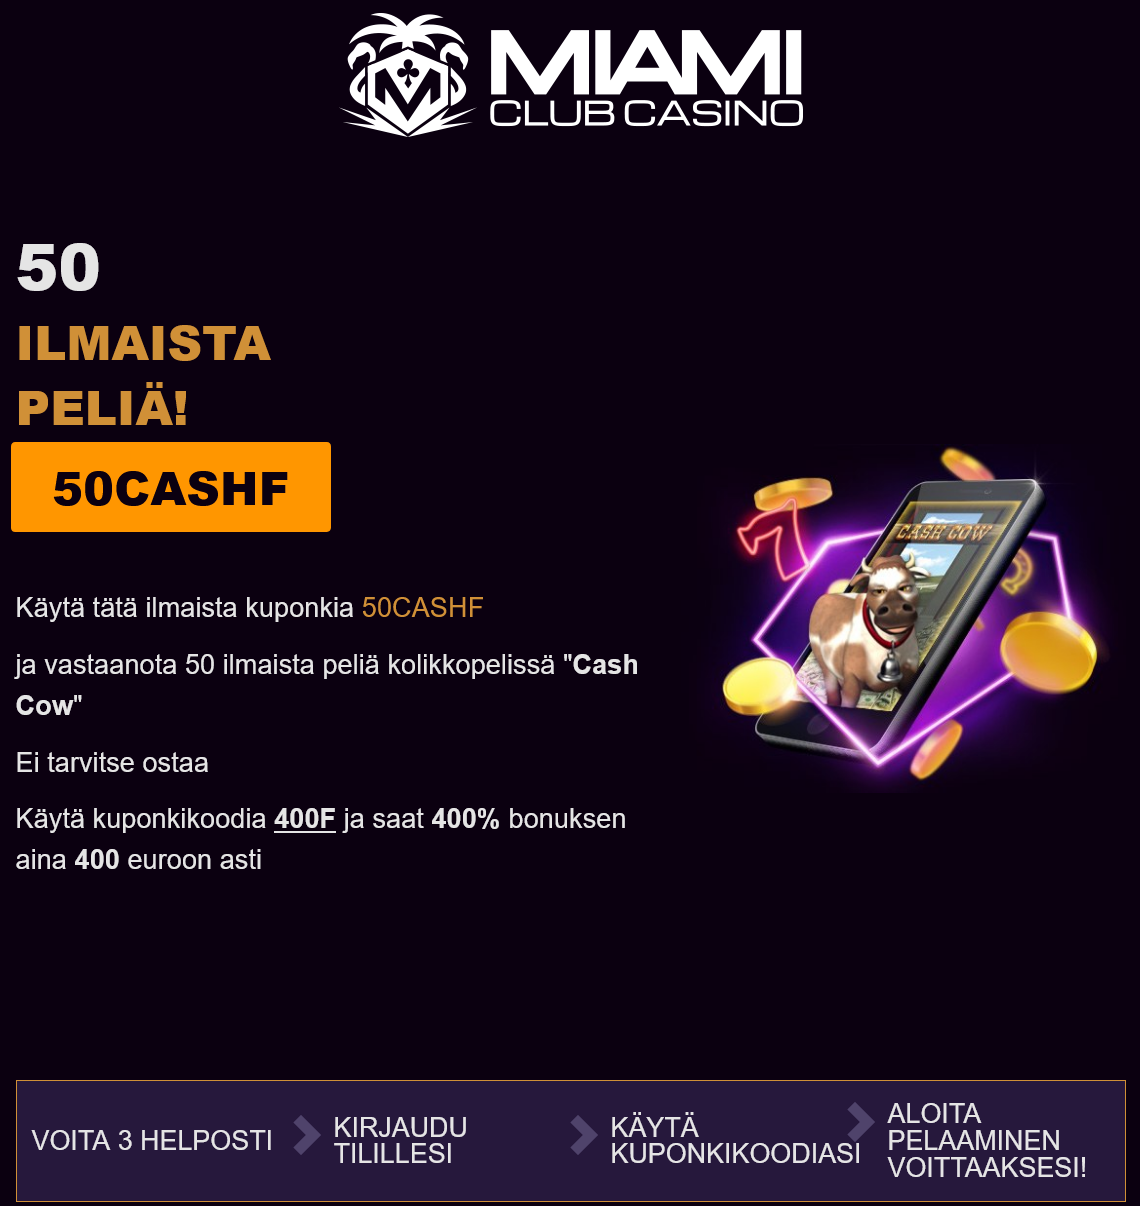 Miami Club 50 Free
                                                Spins